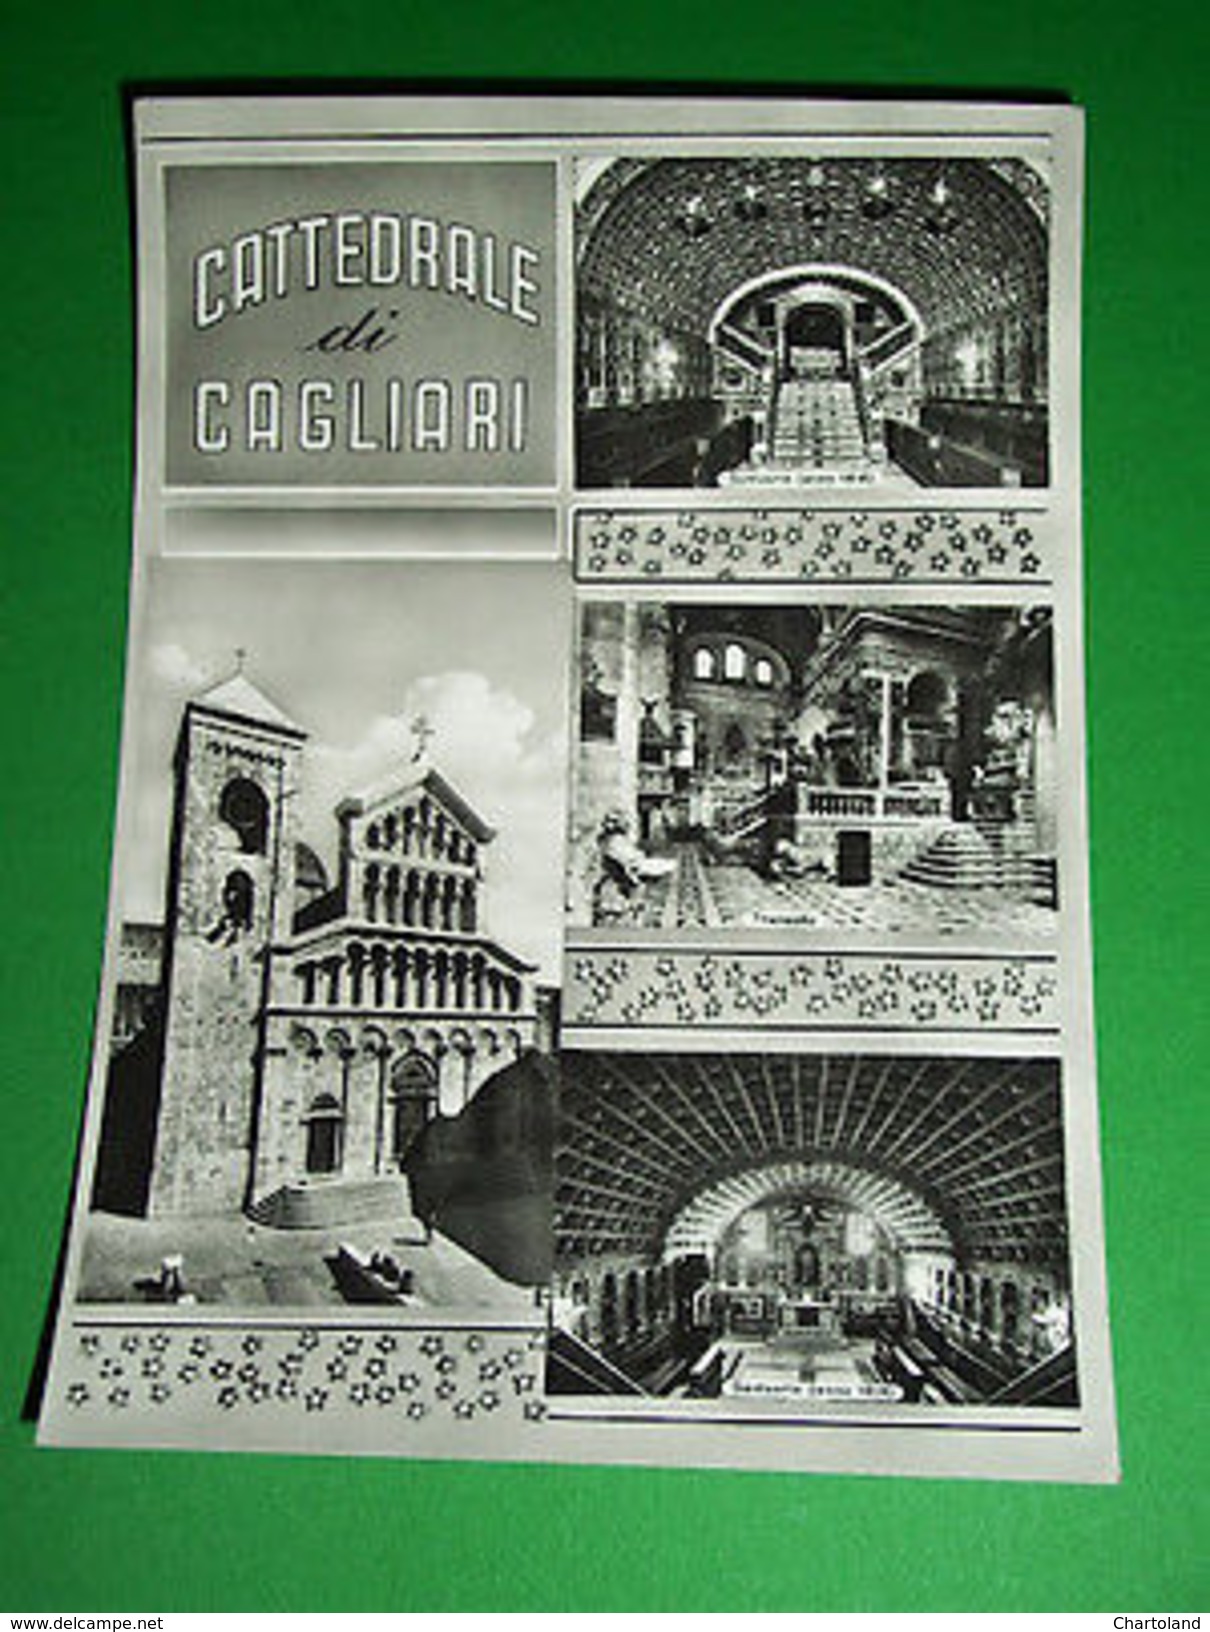 Cartolina Cattedrale Di Cagliari - Vedute Diverse 1955 Ca - Cagliari